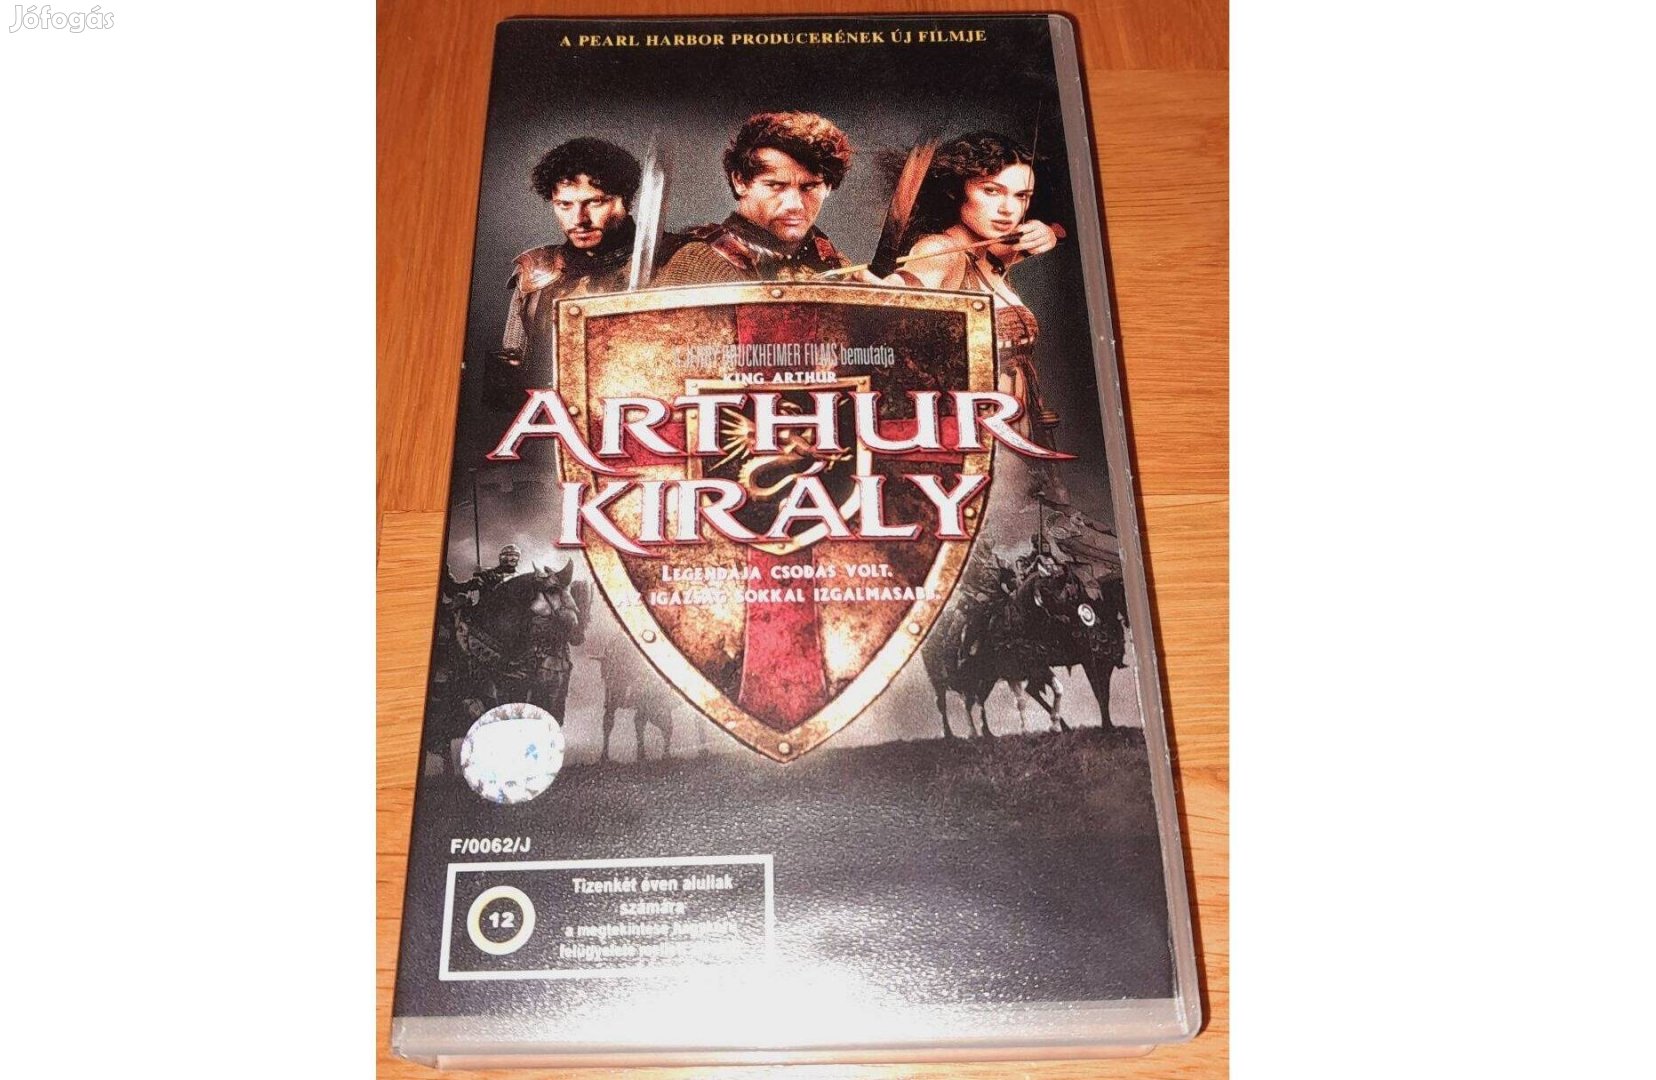 Arthur király VHS (2004) Magyar szinkron Videókazetta videó kazetta